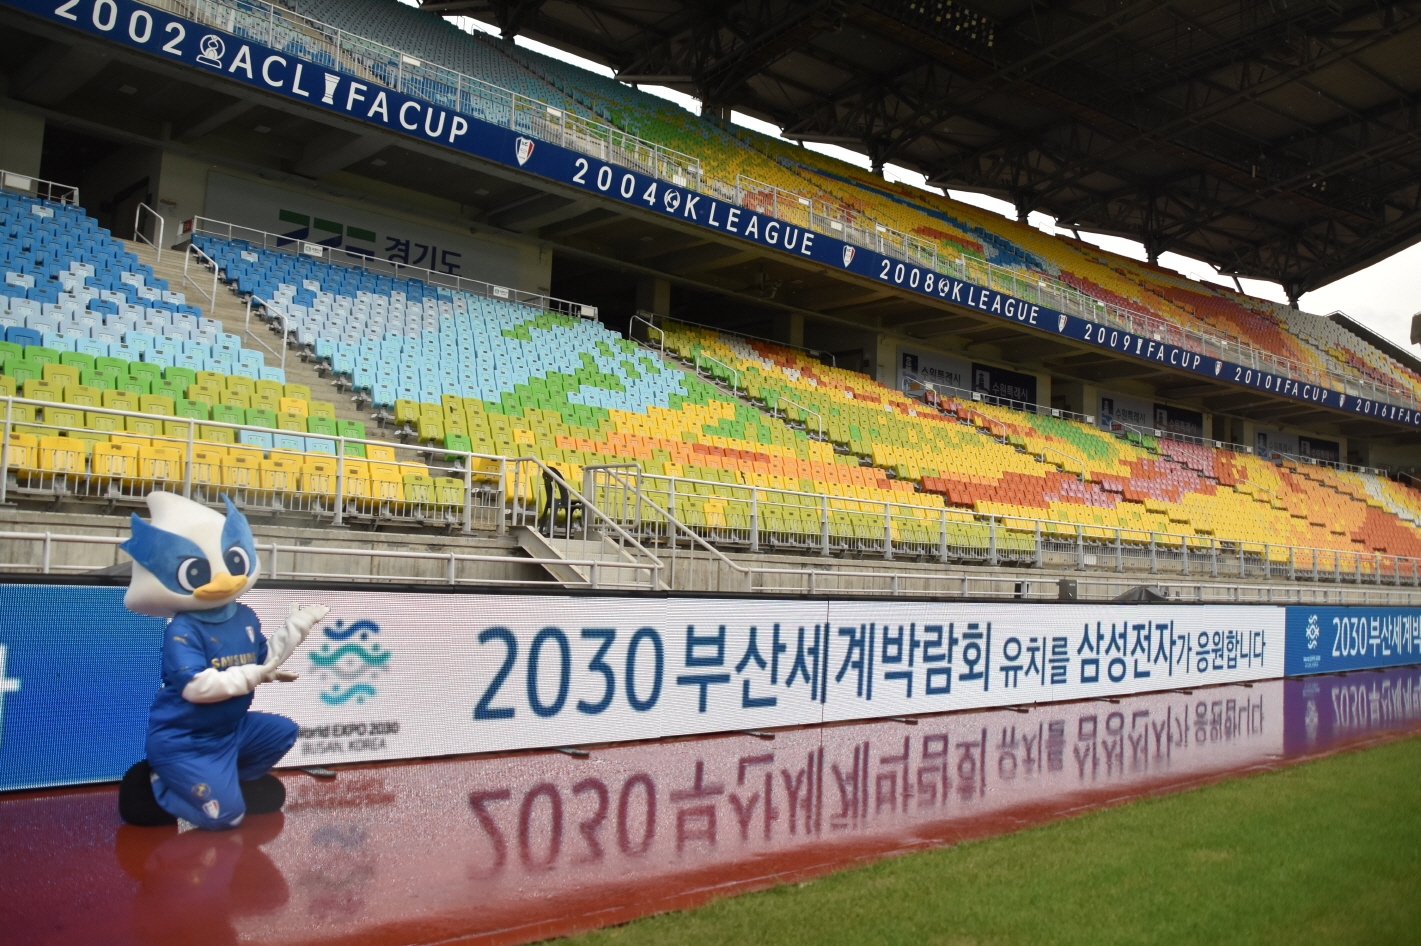  삼성전자가 지난 14일부터 삼성 블루윙즈 축구단의 수원 경기장 내 130M 길이의 대형 LED 광고판을 활용해 '2030 부산세계박람회(엑스포)' 유치를 응원하고 있다. 사진=삼성전자